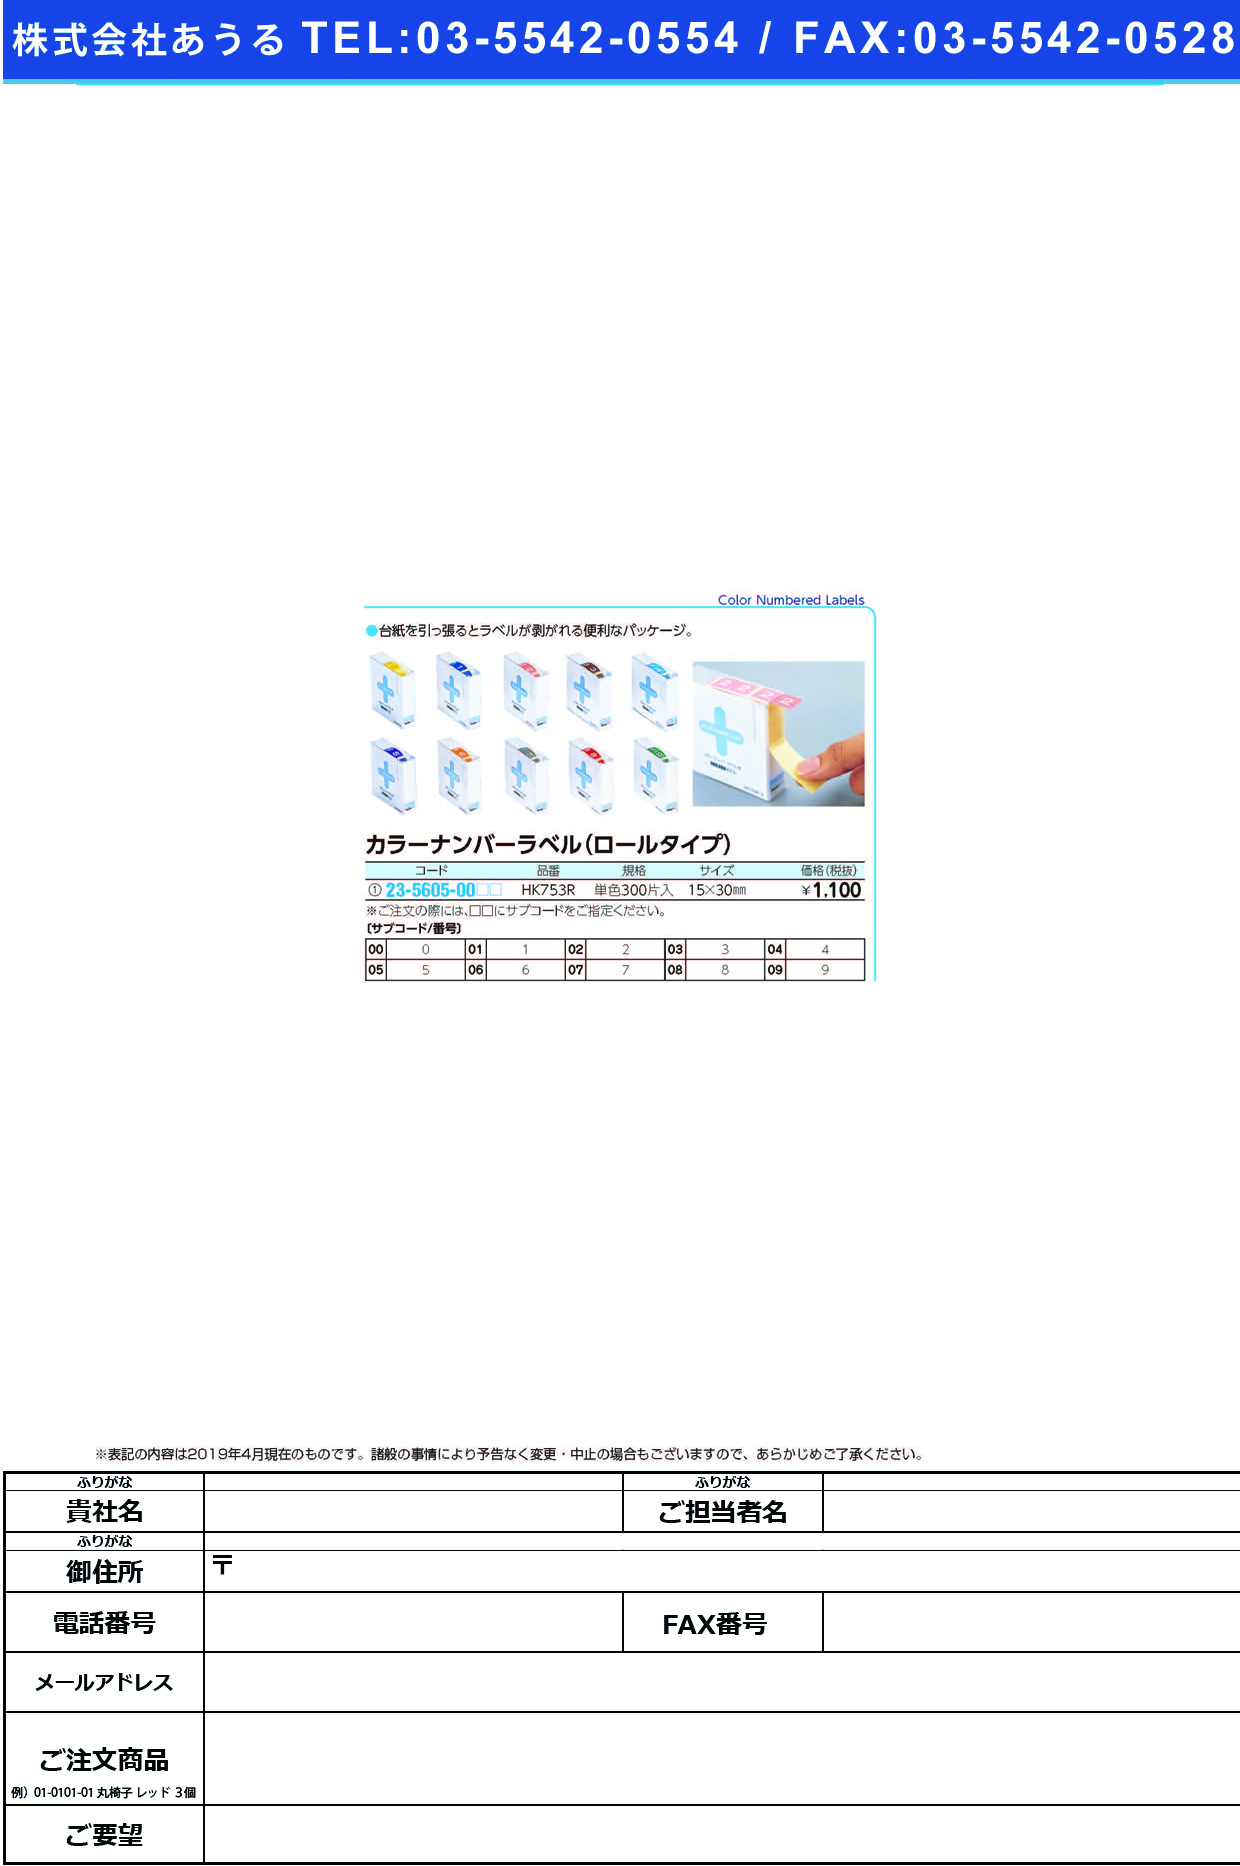 (23-5605-00)カラーナンバーラベル（Ｍ）ロール HK753R(ﾀﾝﾊﾞﾝ)300ﾍﾝｲﾘ ｶﾗｰﾅﾝﾊﾞｰﾗﾍﾞﾙMﾛｰﾙ ２(ＬＩＨＩＴＬＡＢ．)【1箱単位】【2019年カタログ商品】